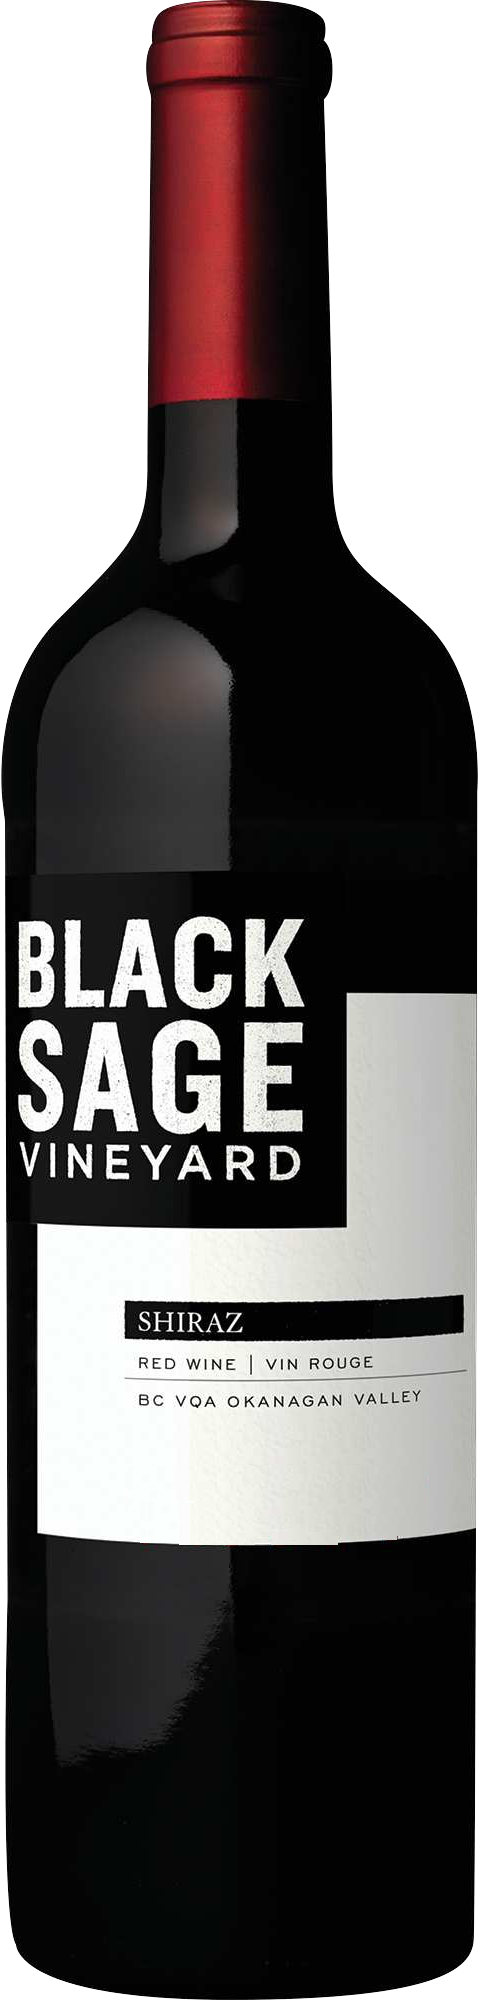 2019 Black günstig Kaufen-Black Sage Vineyard Shiraz 2019. Black Sage Vineyard Shiraz 2019 . 